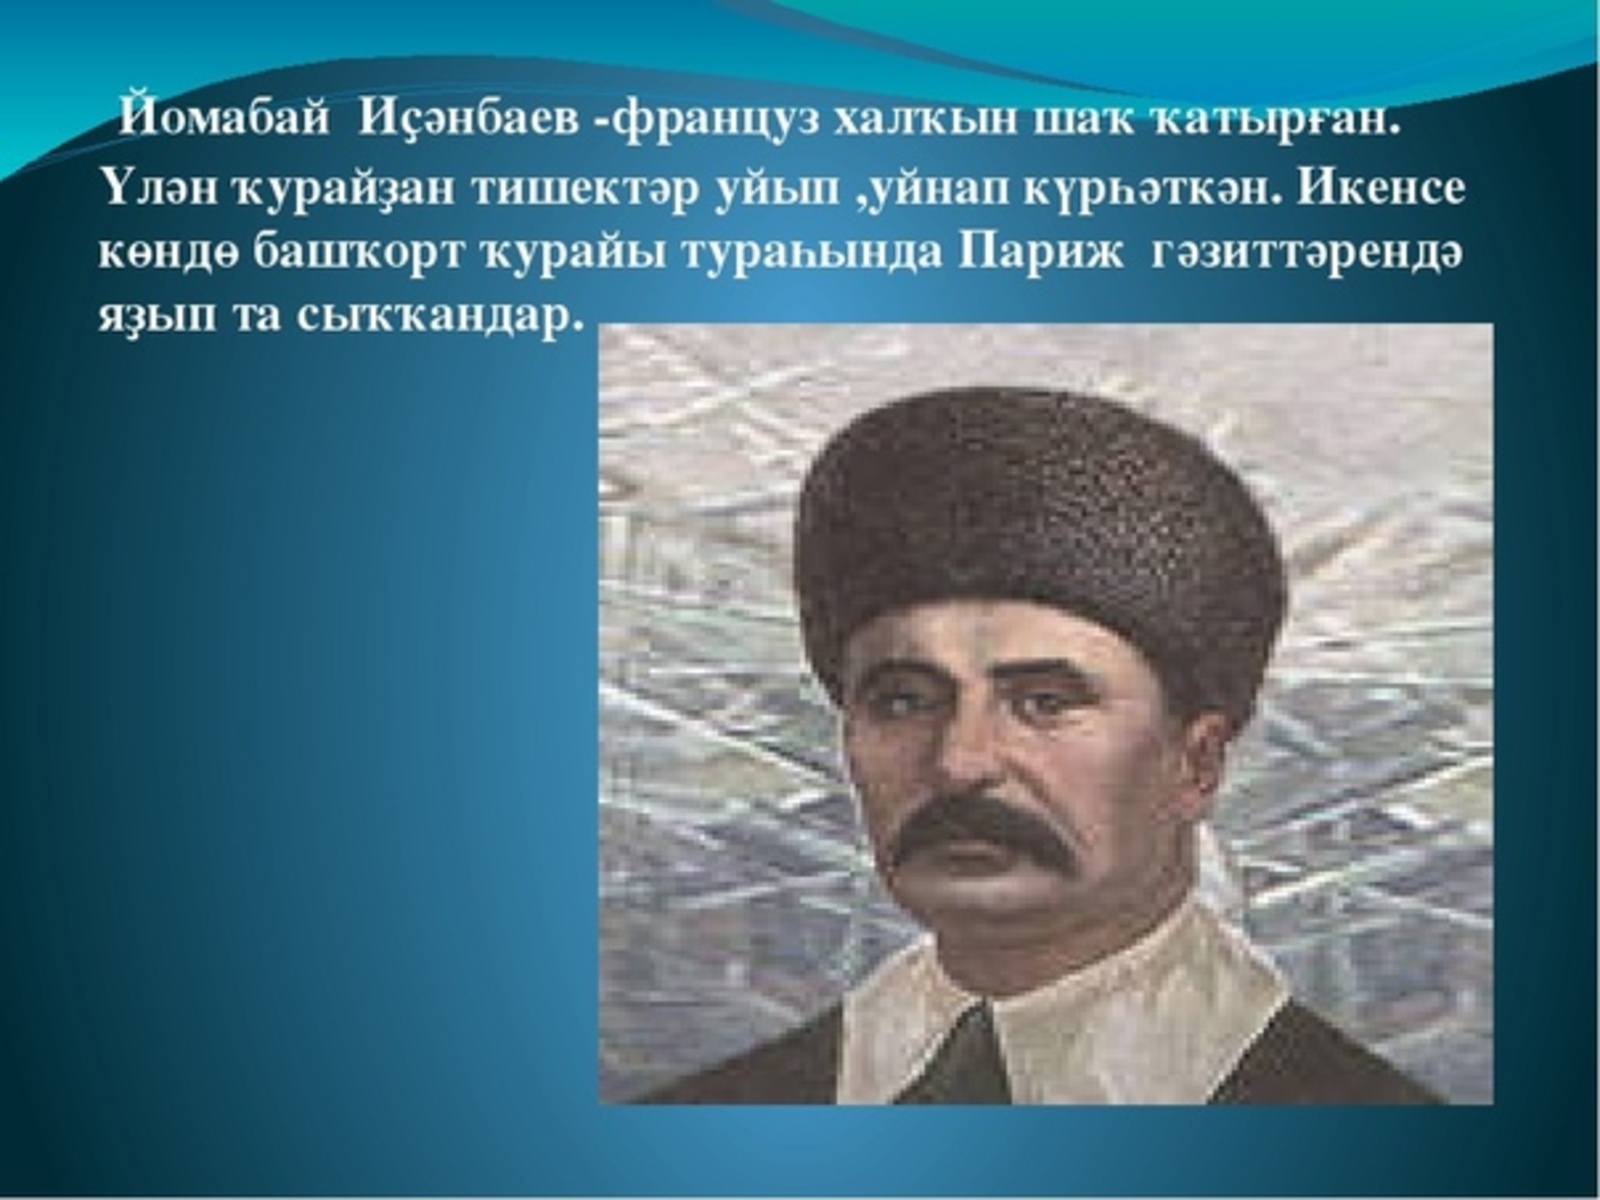 Йомабай Иҫәнбаевҡа - 130 йыл